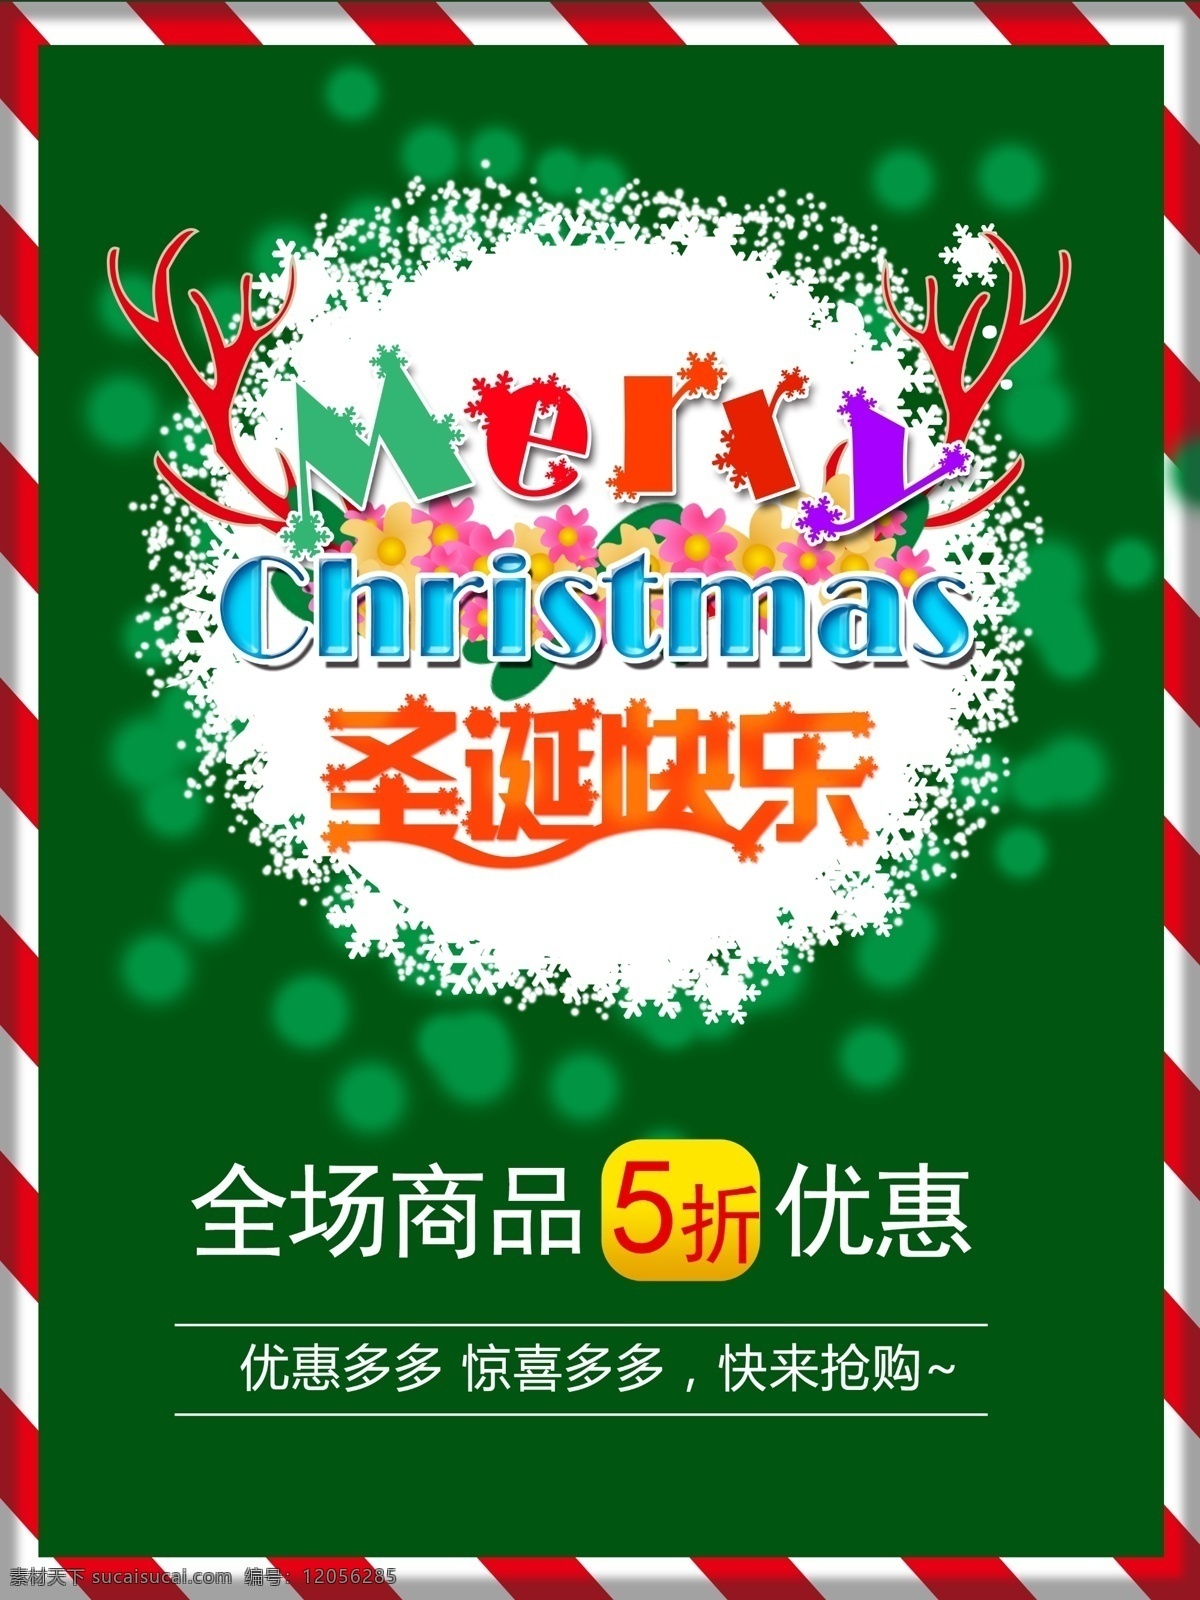 圣诞节 快乐 促销活动 海报 圣诞节快乐 5折优惠 促销 活动海报